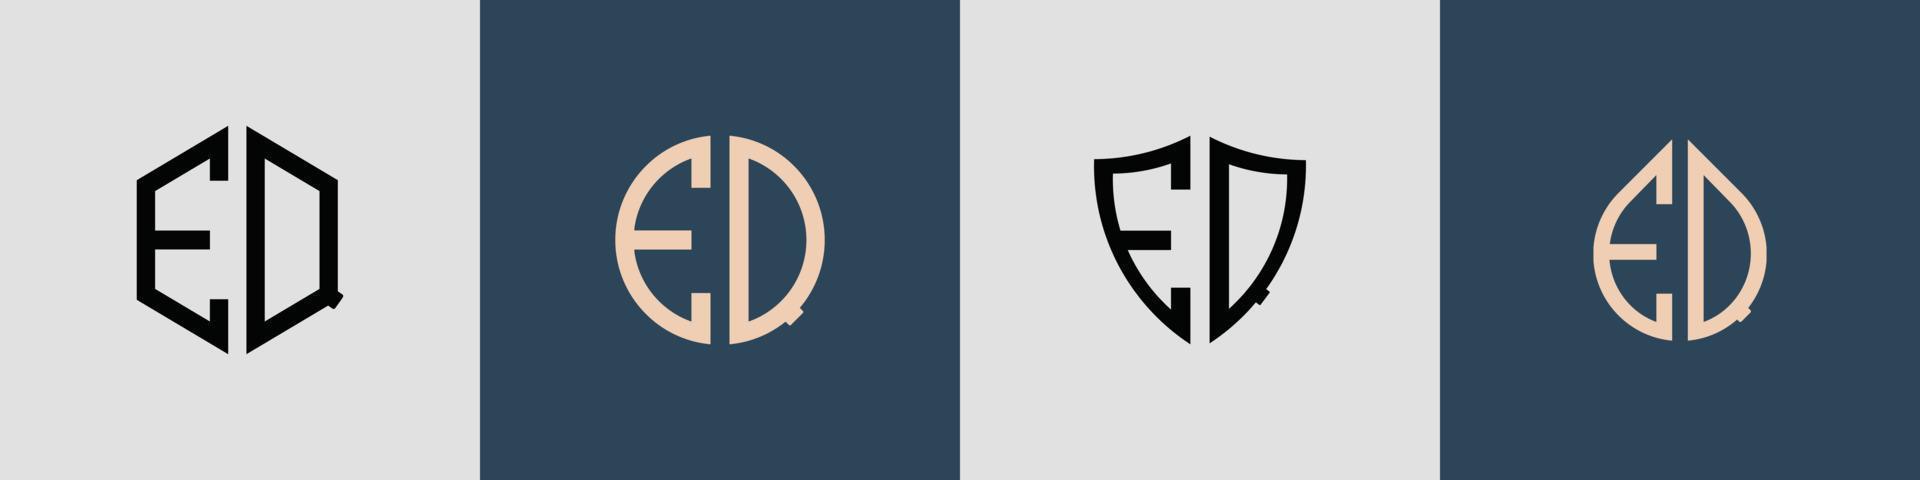 pacchetto creativo semplice di lettere iniziali eq logo design. vettore